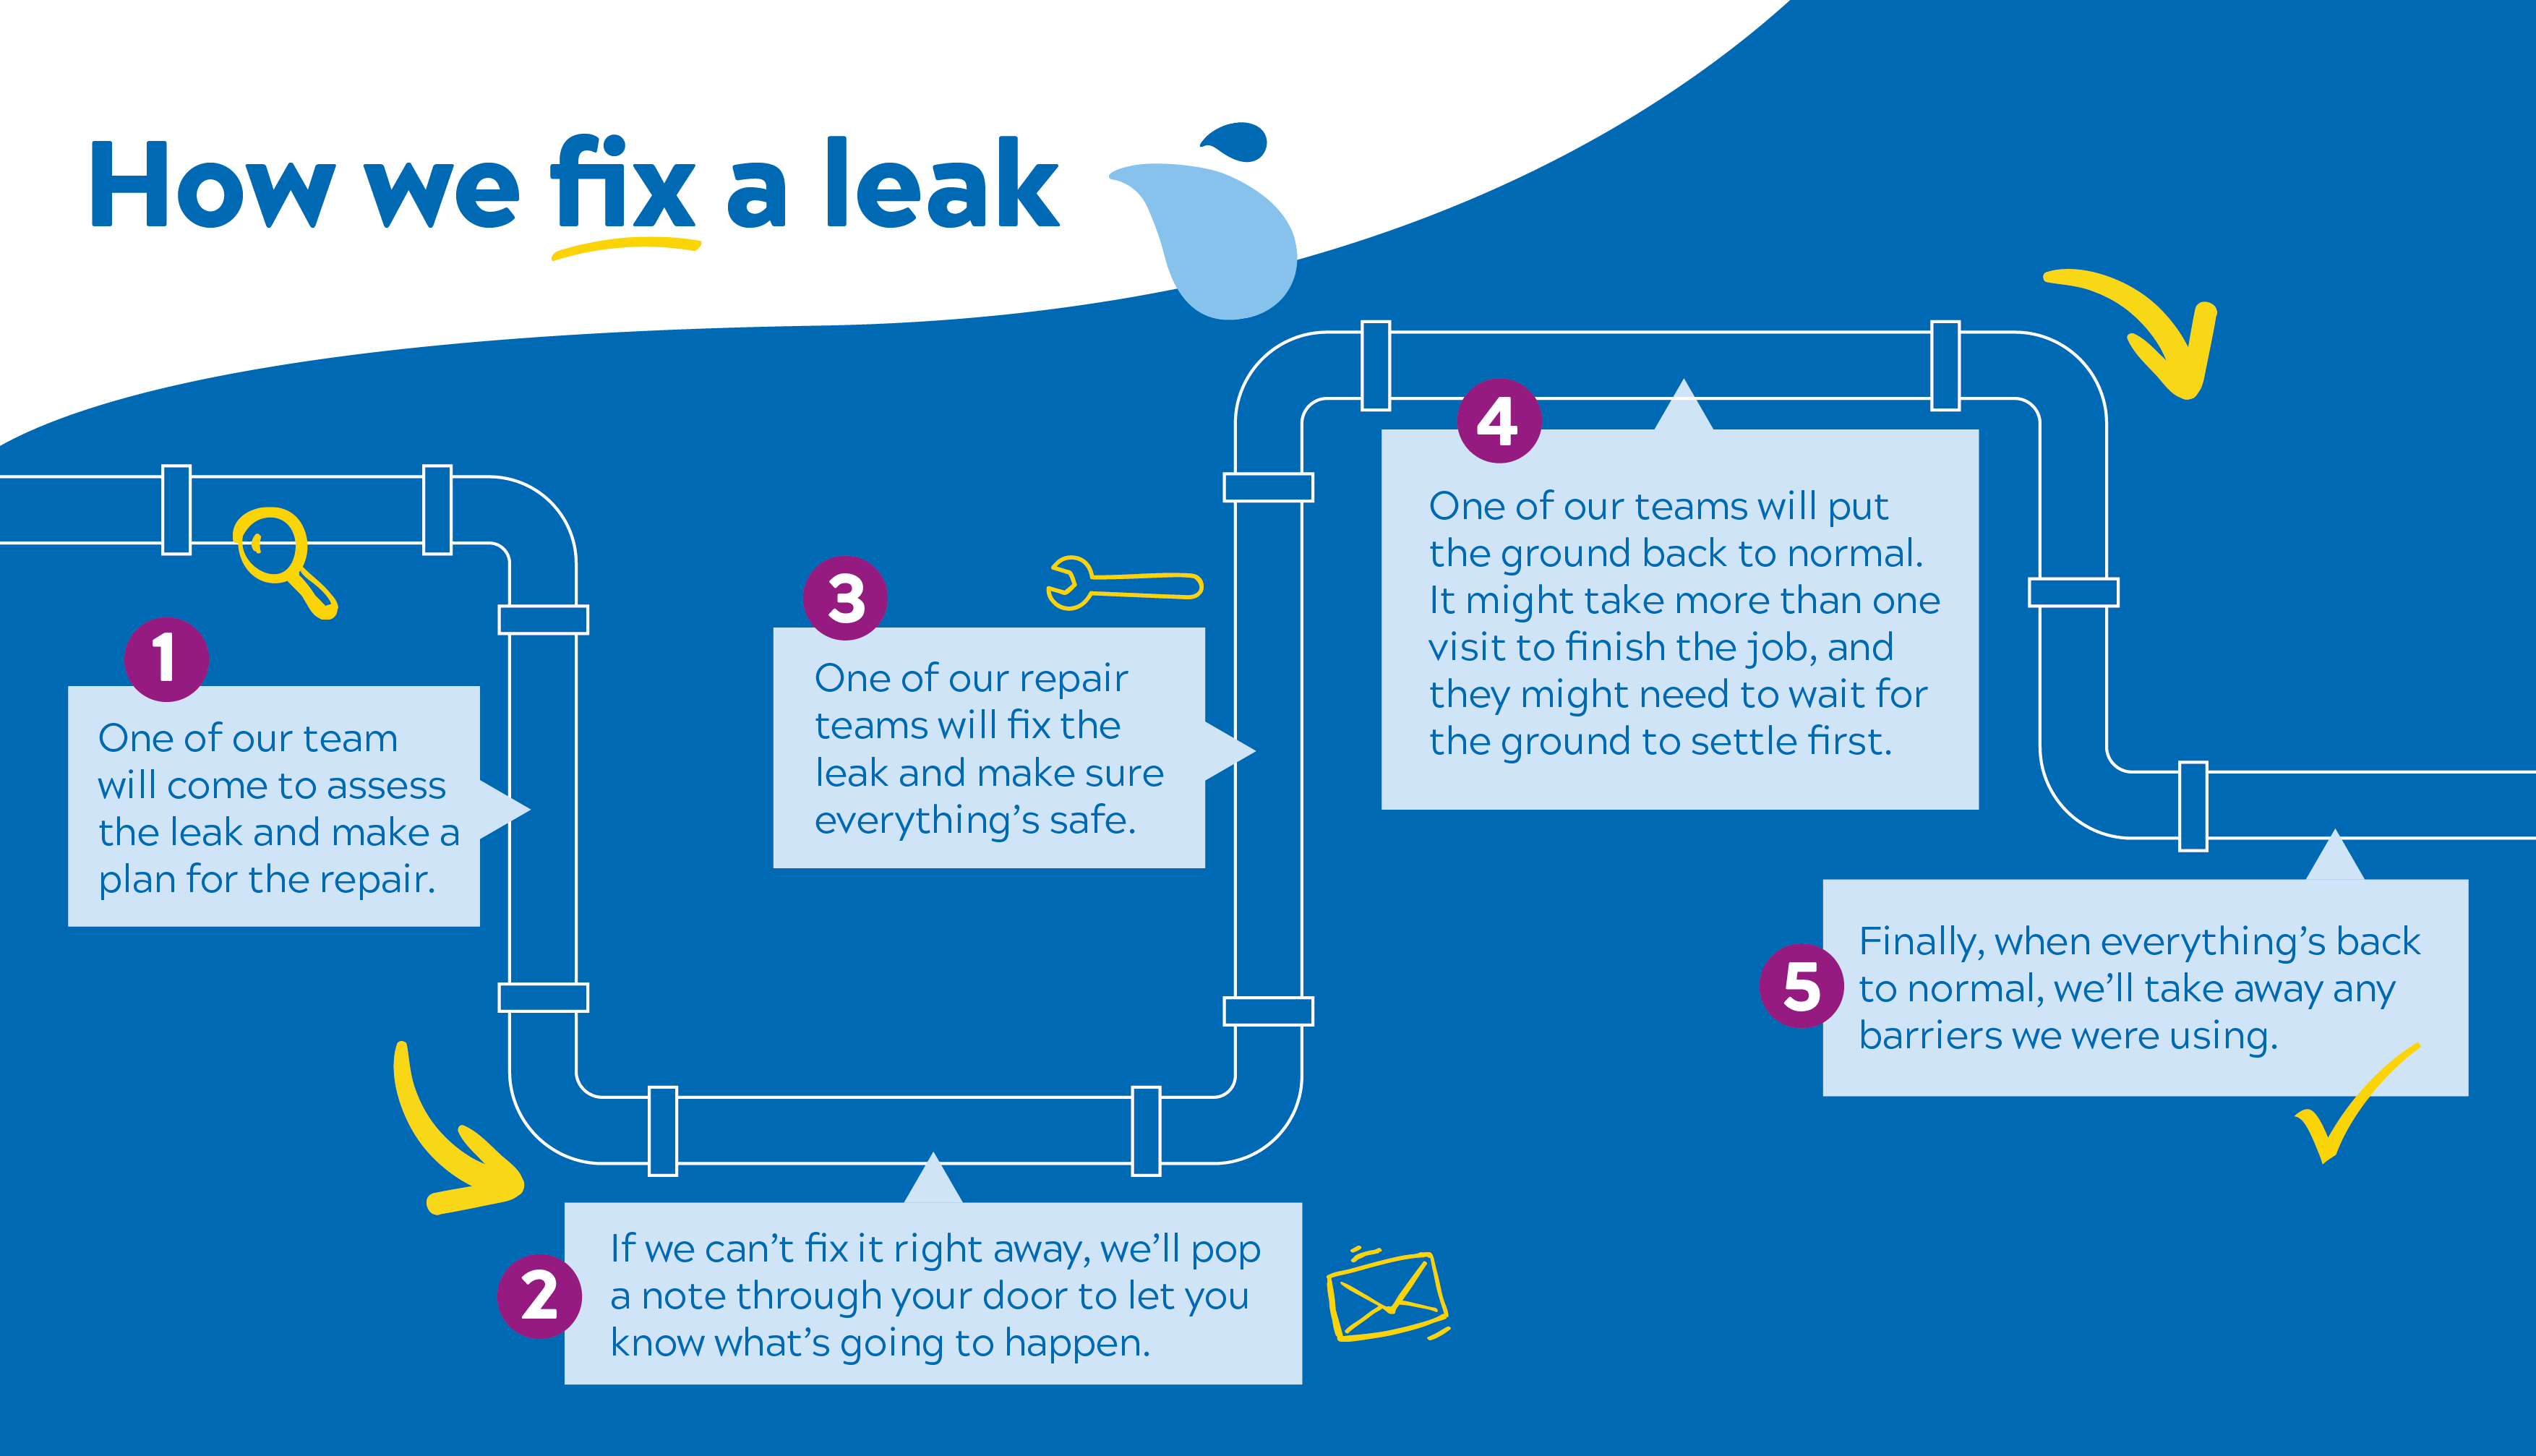 how-we-fix-a-leak-image.png